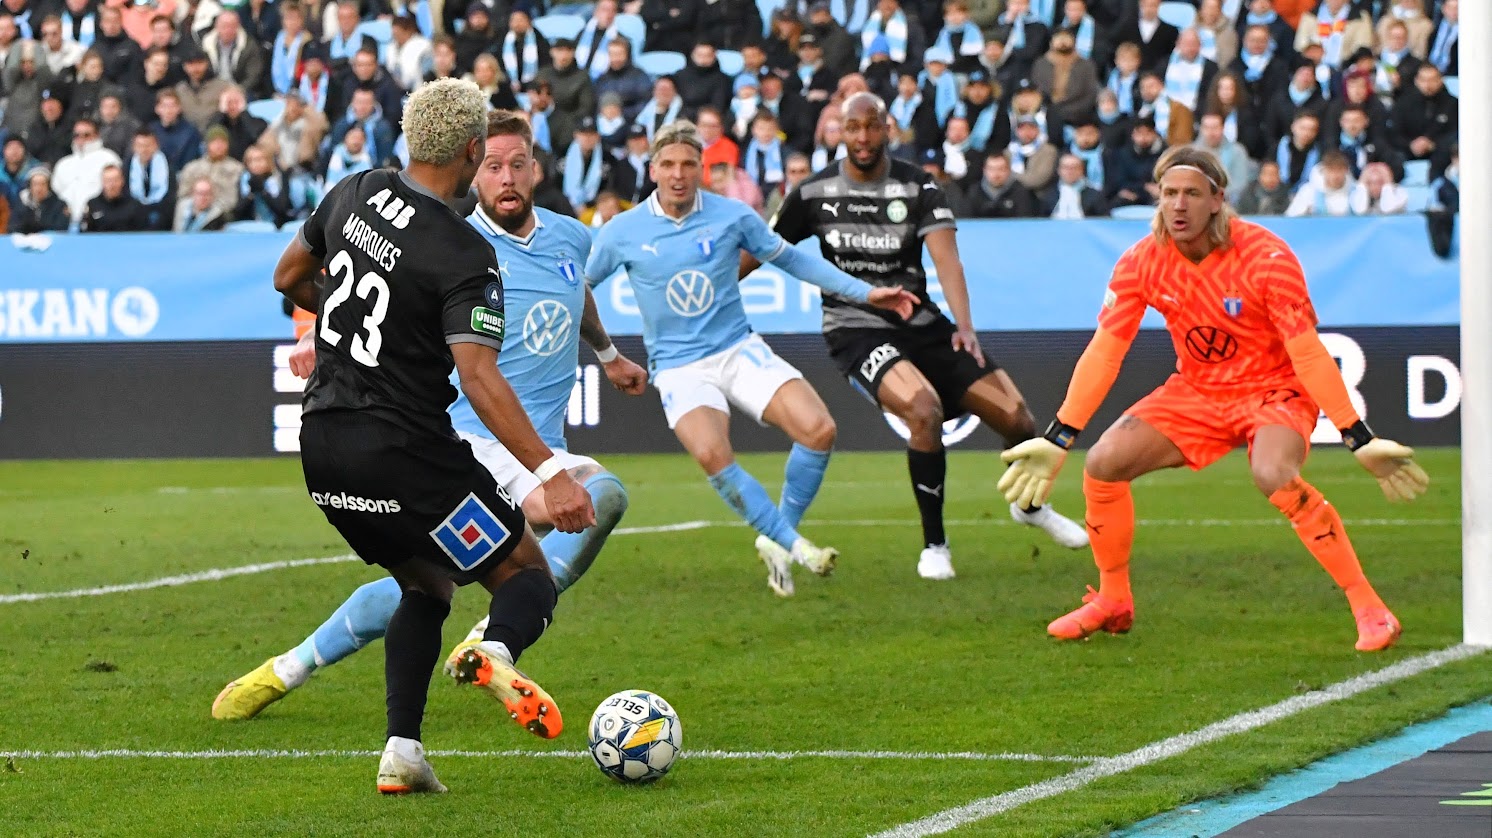 Västerås SK: Hedersam förlust mot Malmö FF: ”Uppoffrande spel”